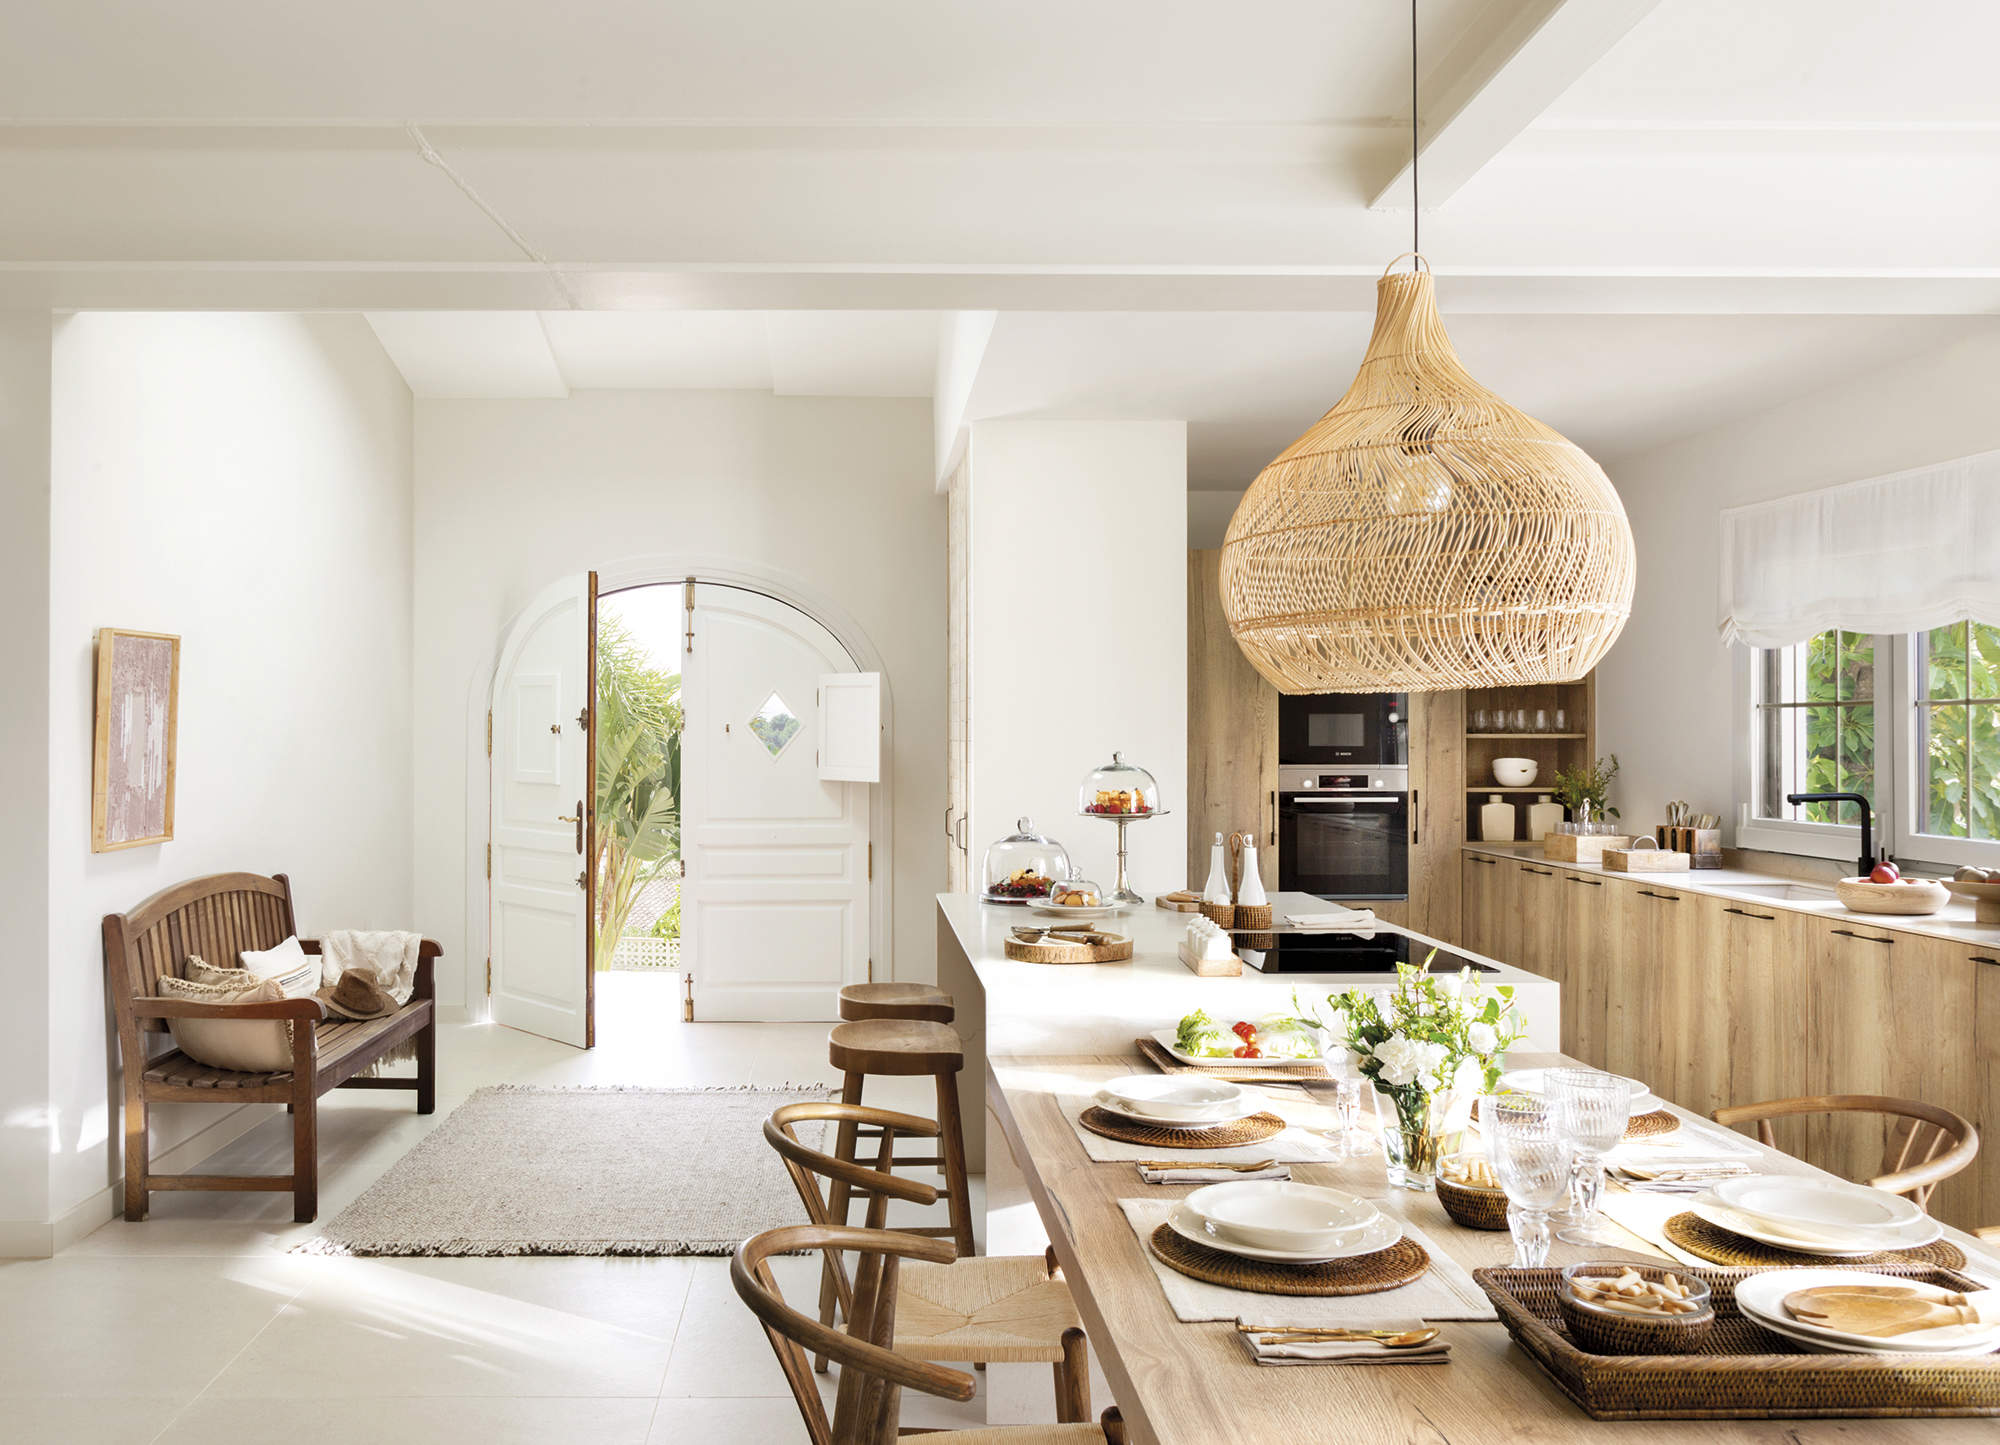 Cocina abierta con muebles de madera y mesa ru´stica MG 1731 1